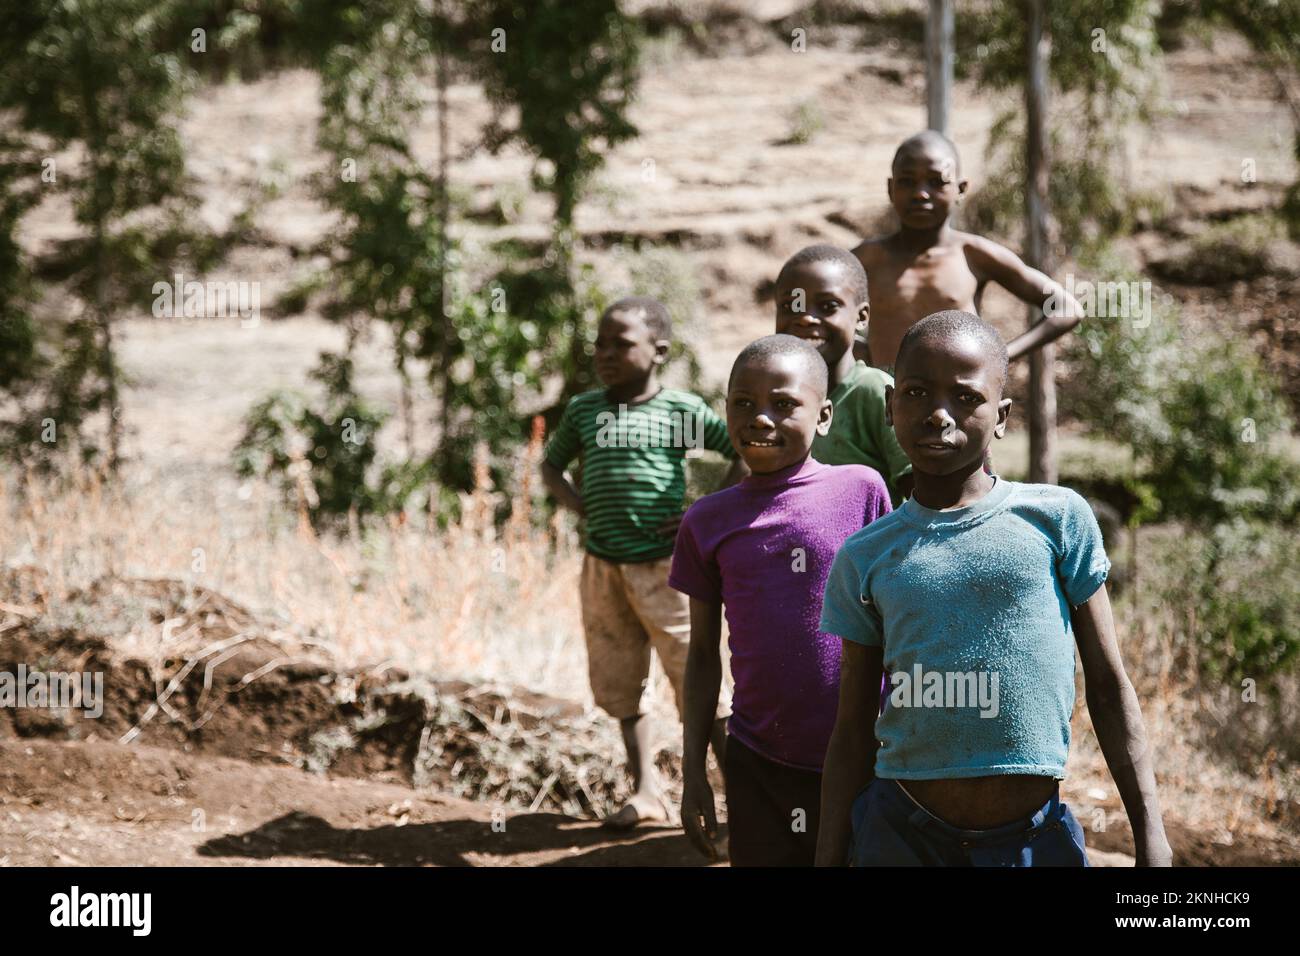 Mount Elgon, Kenia - 01.25.2017: Kinder aus armen Familien lächeln in zerrissener Kleidung. Ein Missionarsteam kam, um Obdachlosen zu helfen. Stockfoto